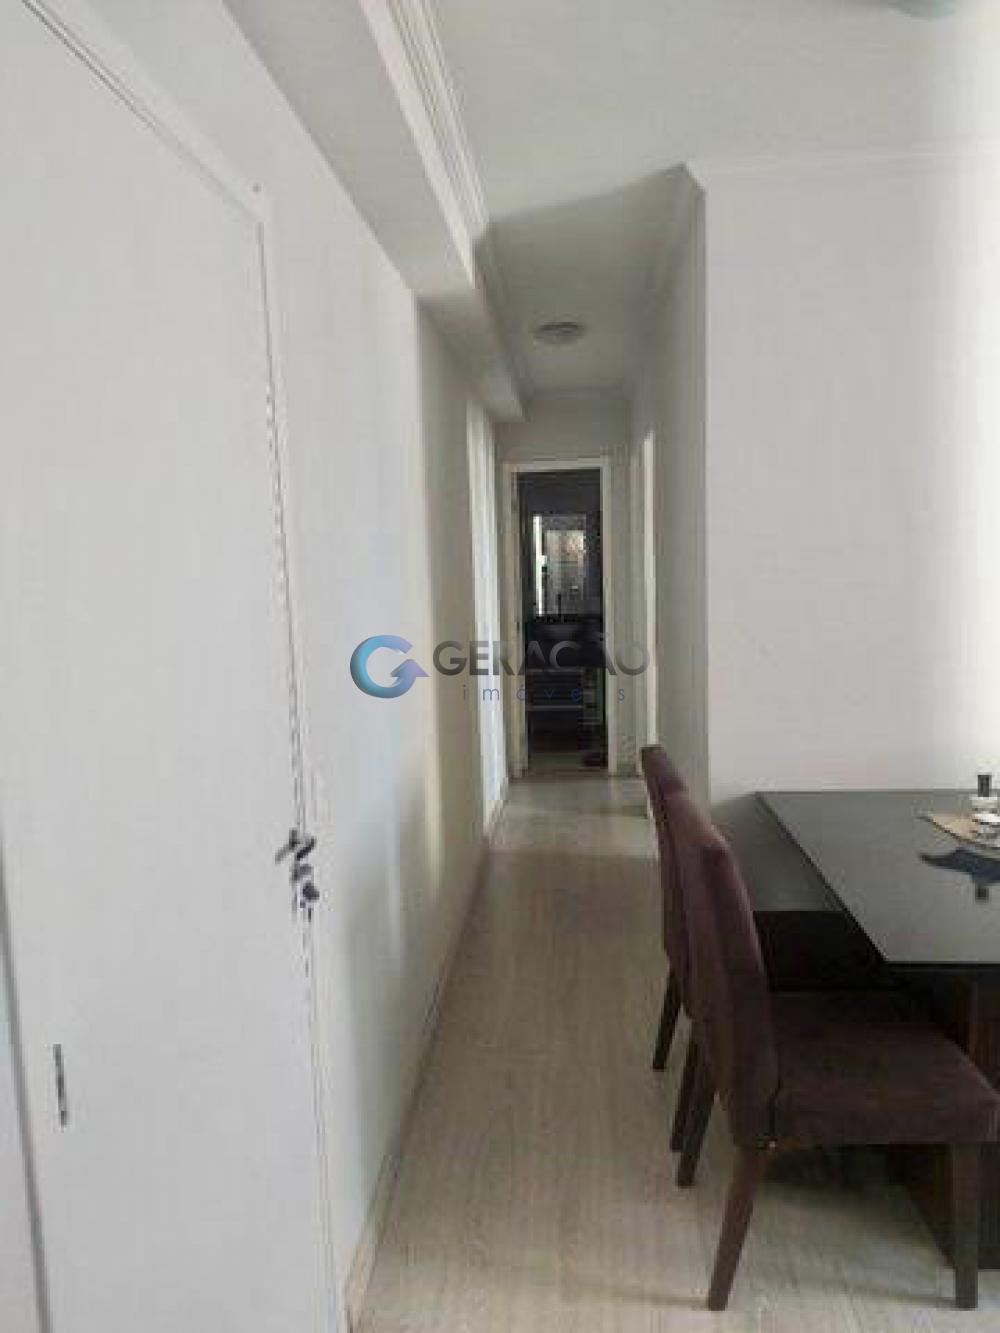 Comprar Apartamento / Padrão em São José dos Campos R$ 240.000,00 - Foto 8